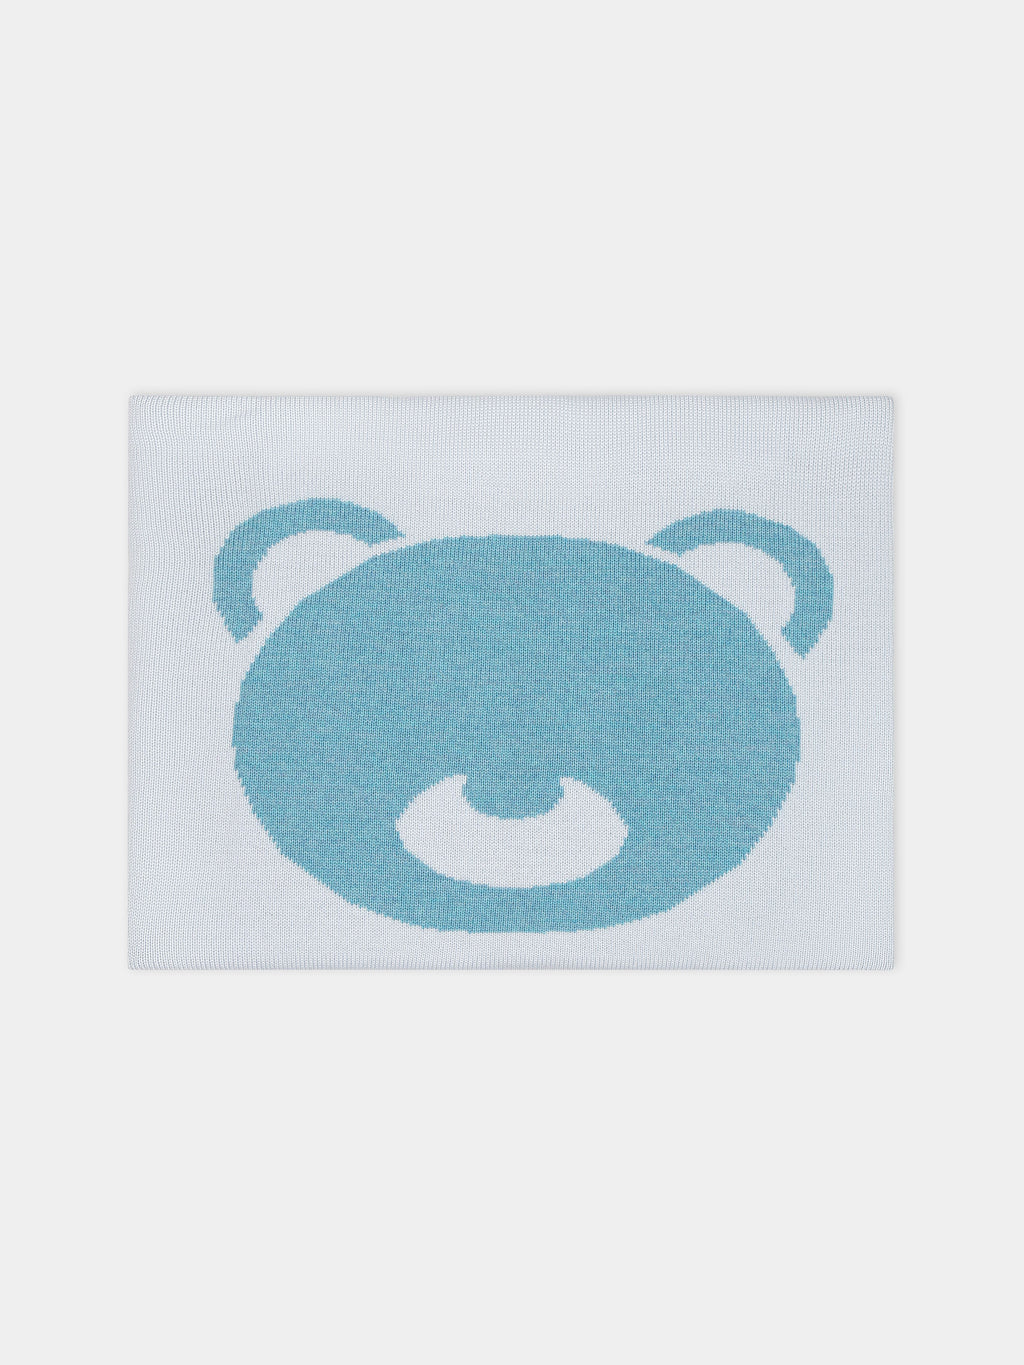 Couverture bleu ciel pour bébé garçon avec ours bleu ciel brodé